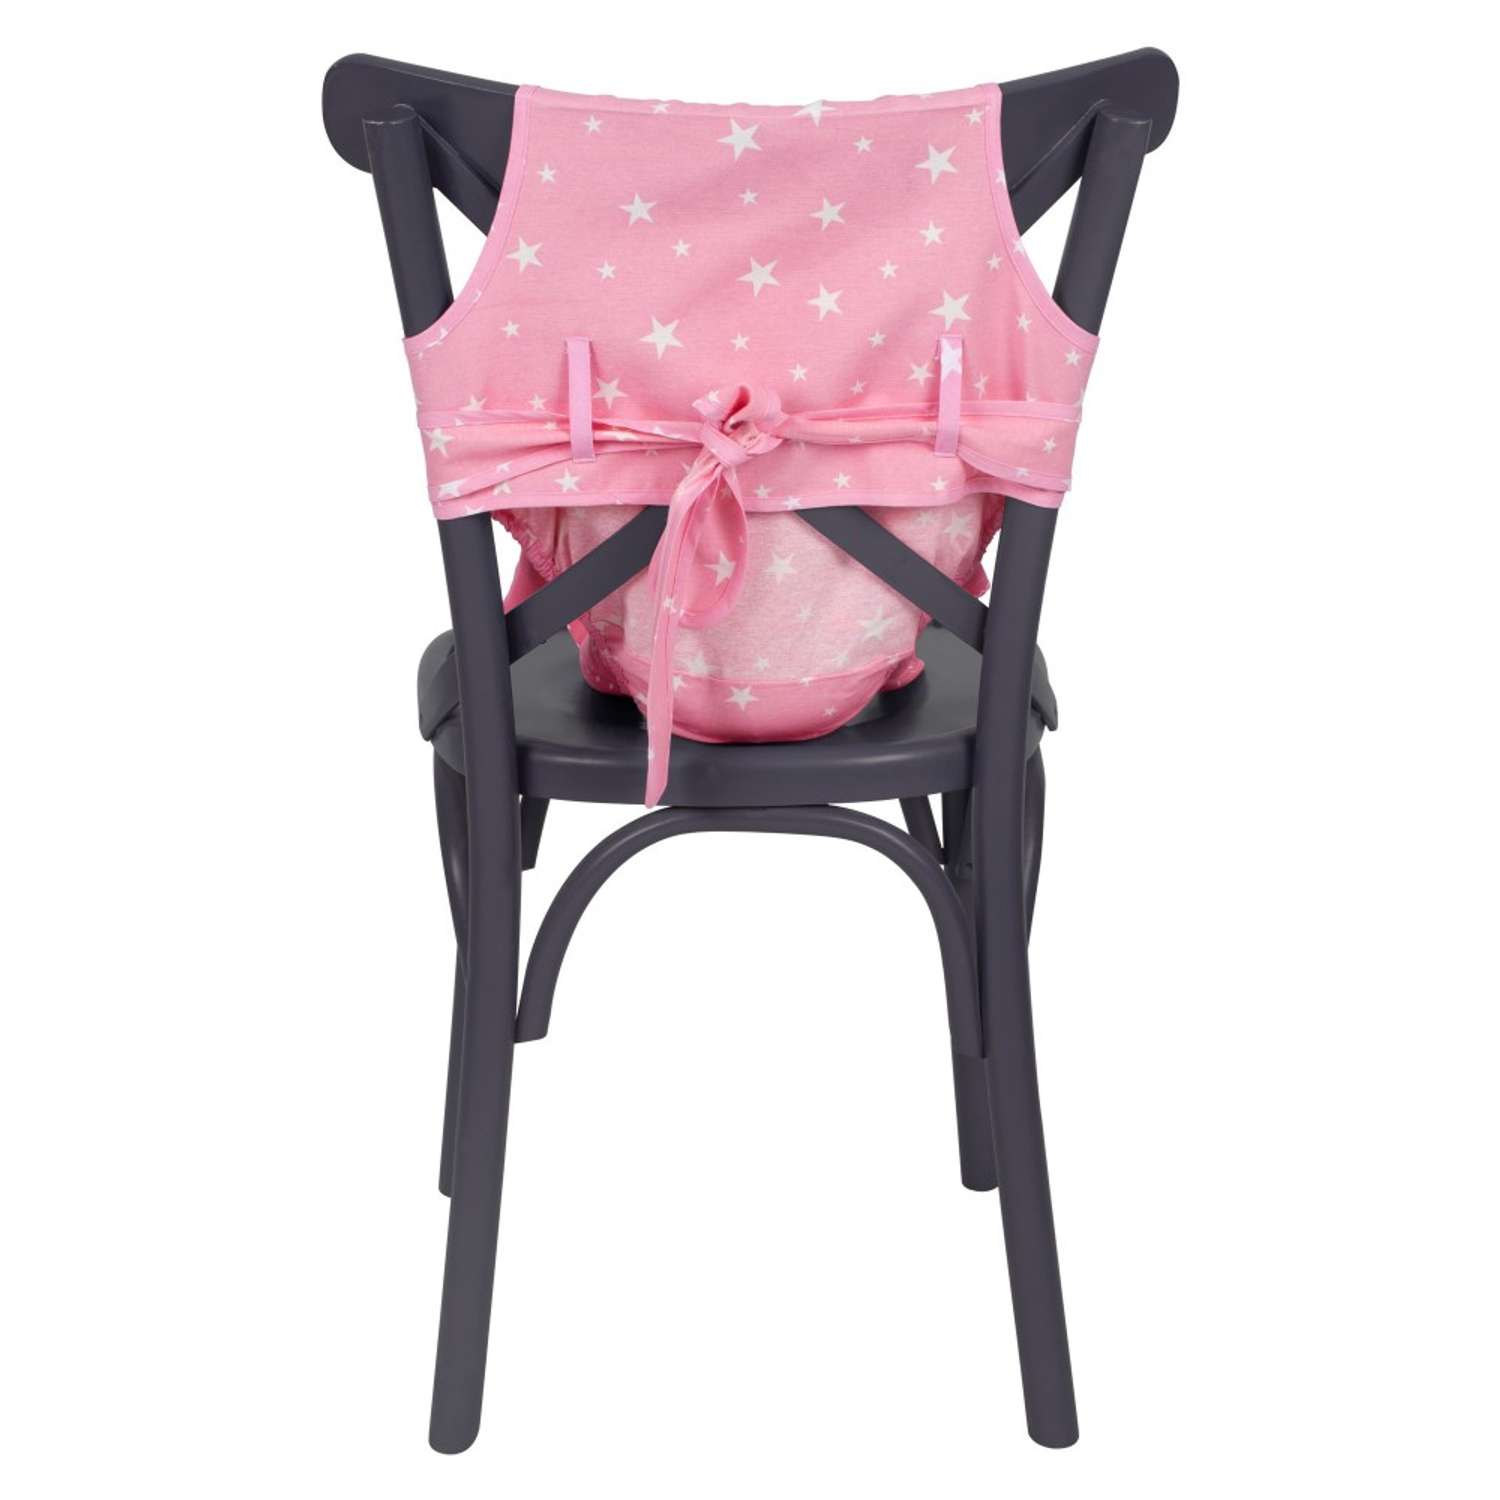 Чехол для стула SEVIBEBE защитный для предотвращения падений малыша - фото 3